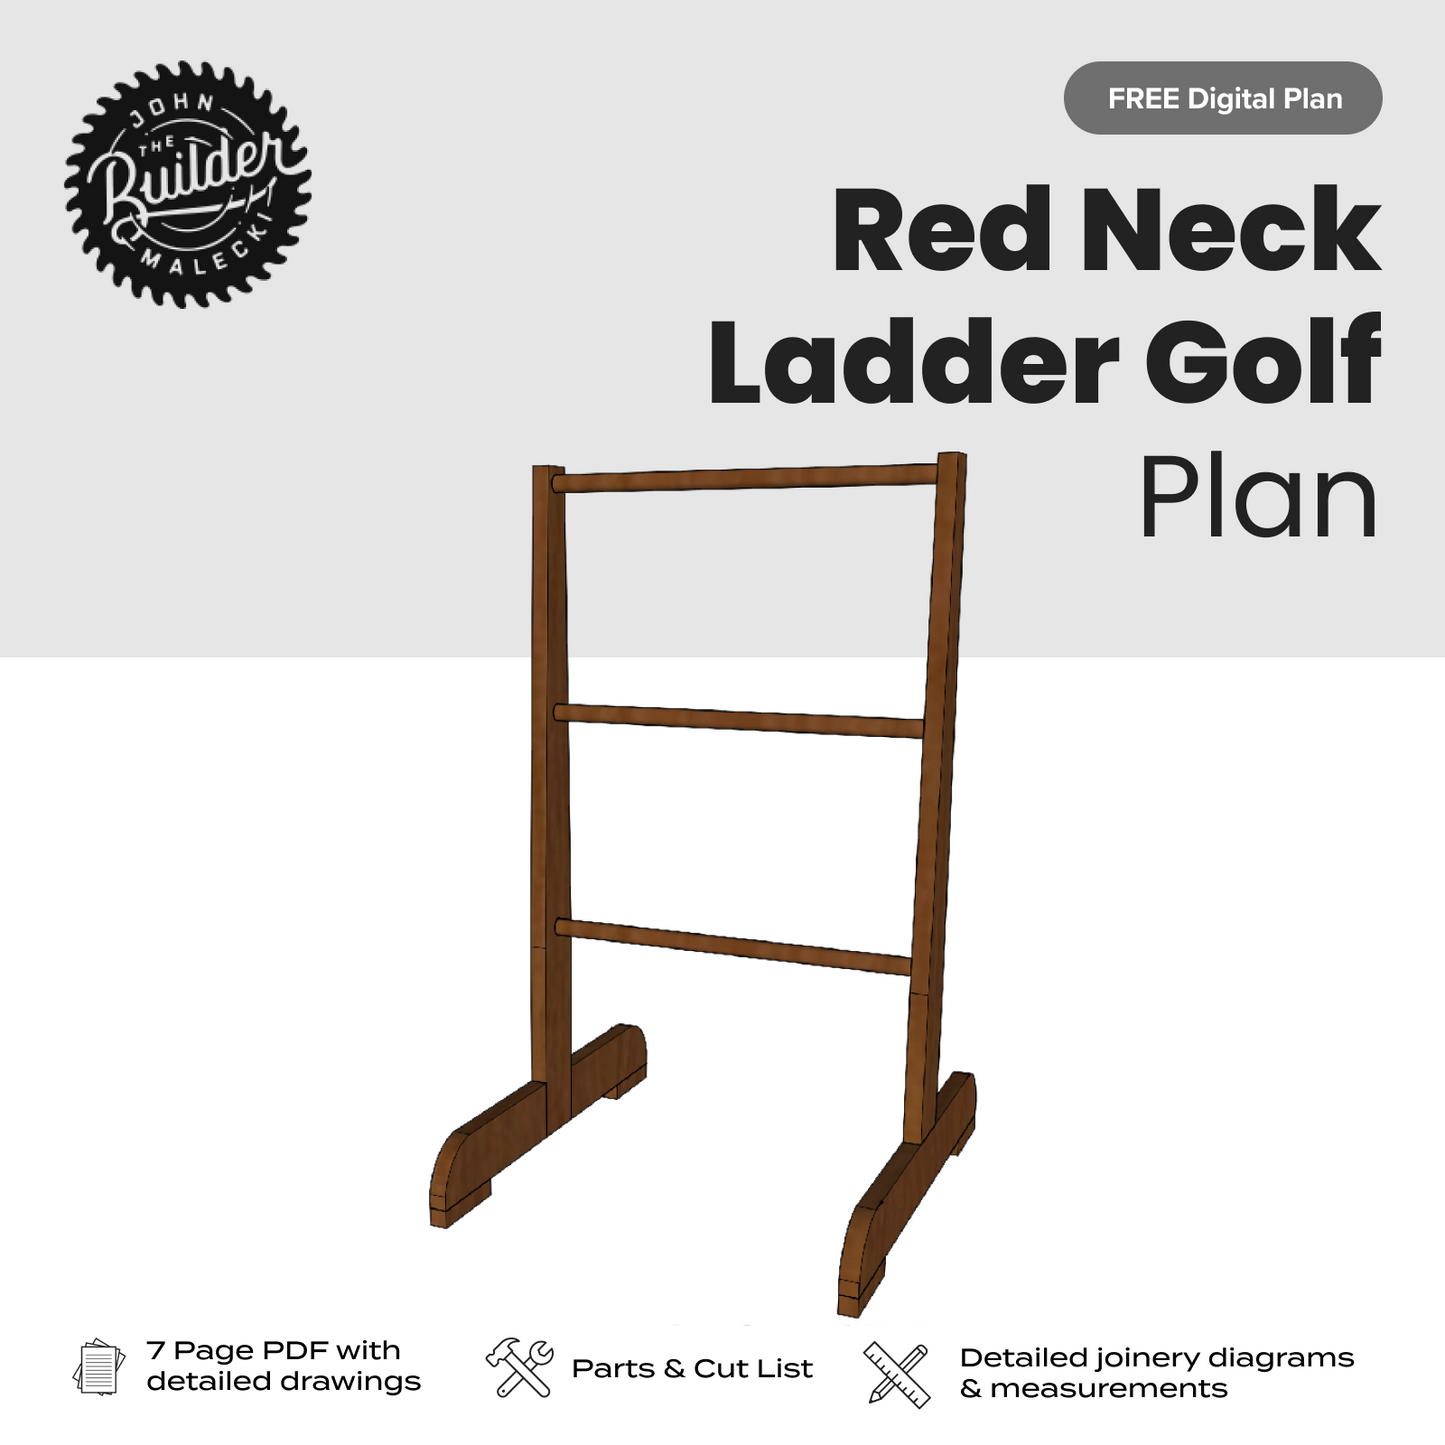 John Malecki - FREE Redneck Golf (Ladder Golf) Plan